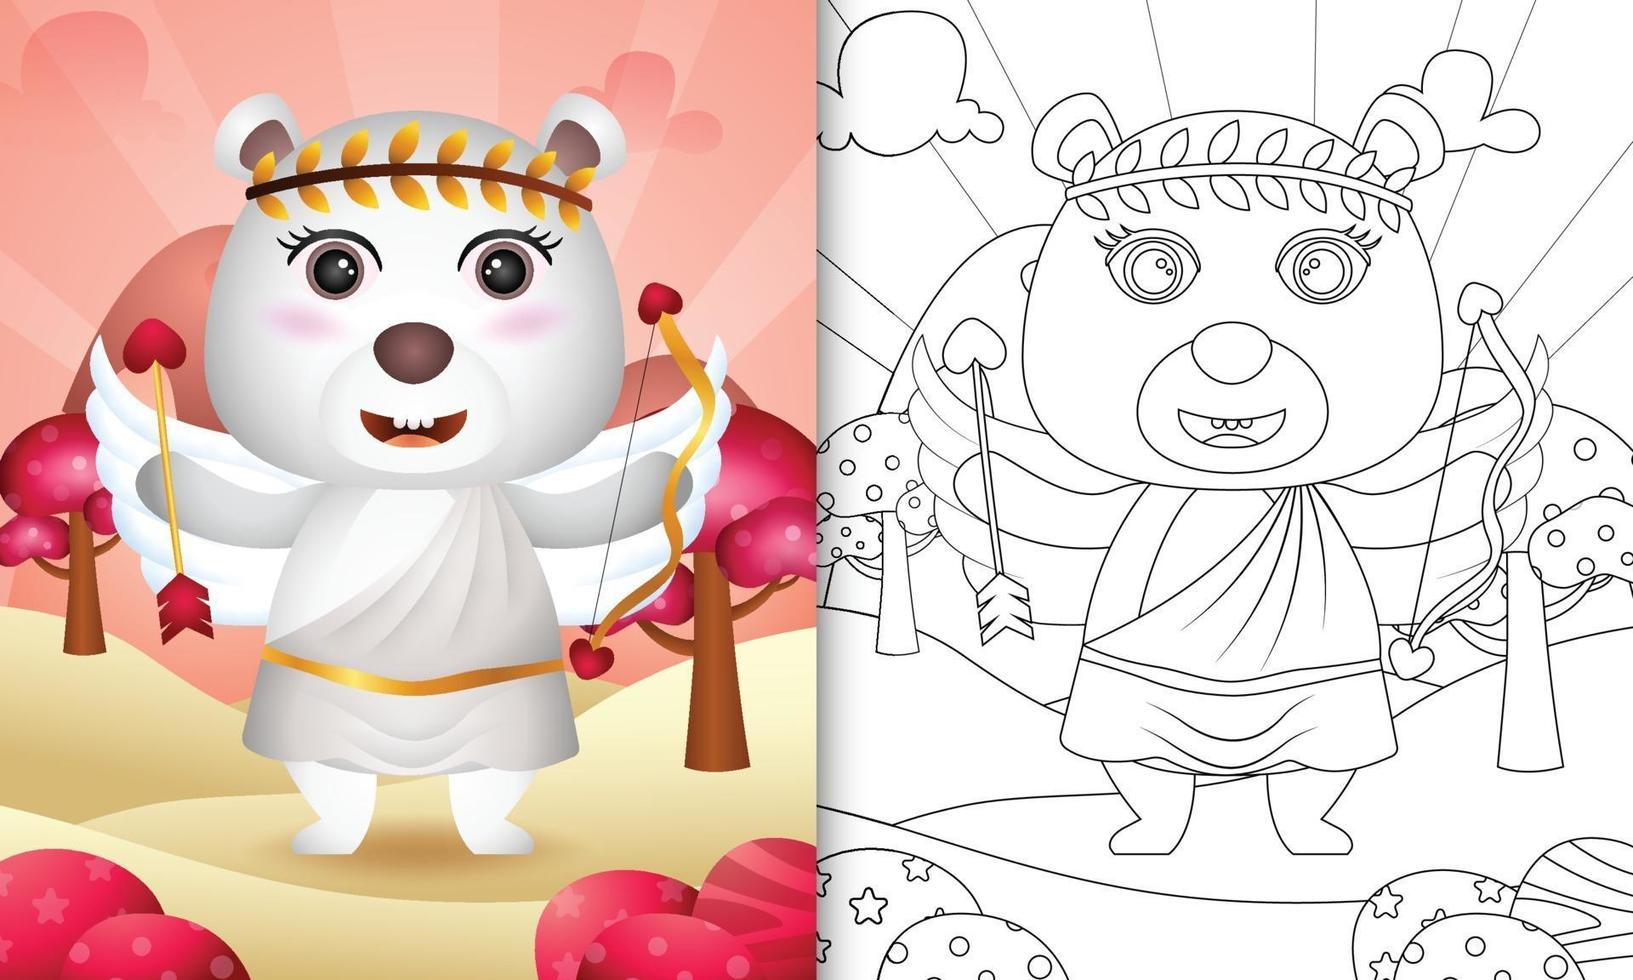 kleurboek voor kinderen met een schattige ijsbeerengel met Valentijnsdag met cupidokostuum als thema vector